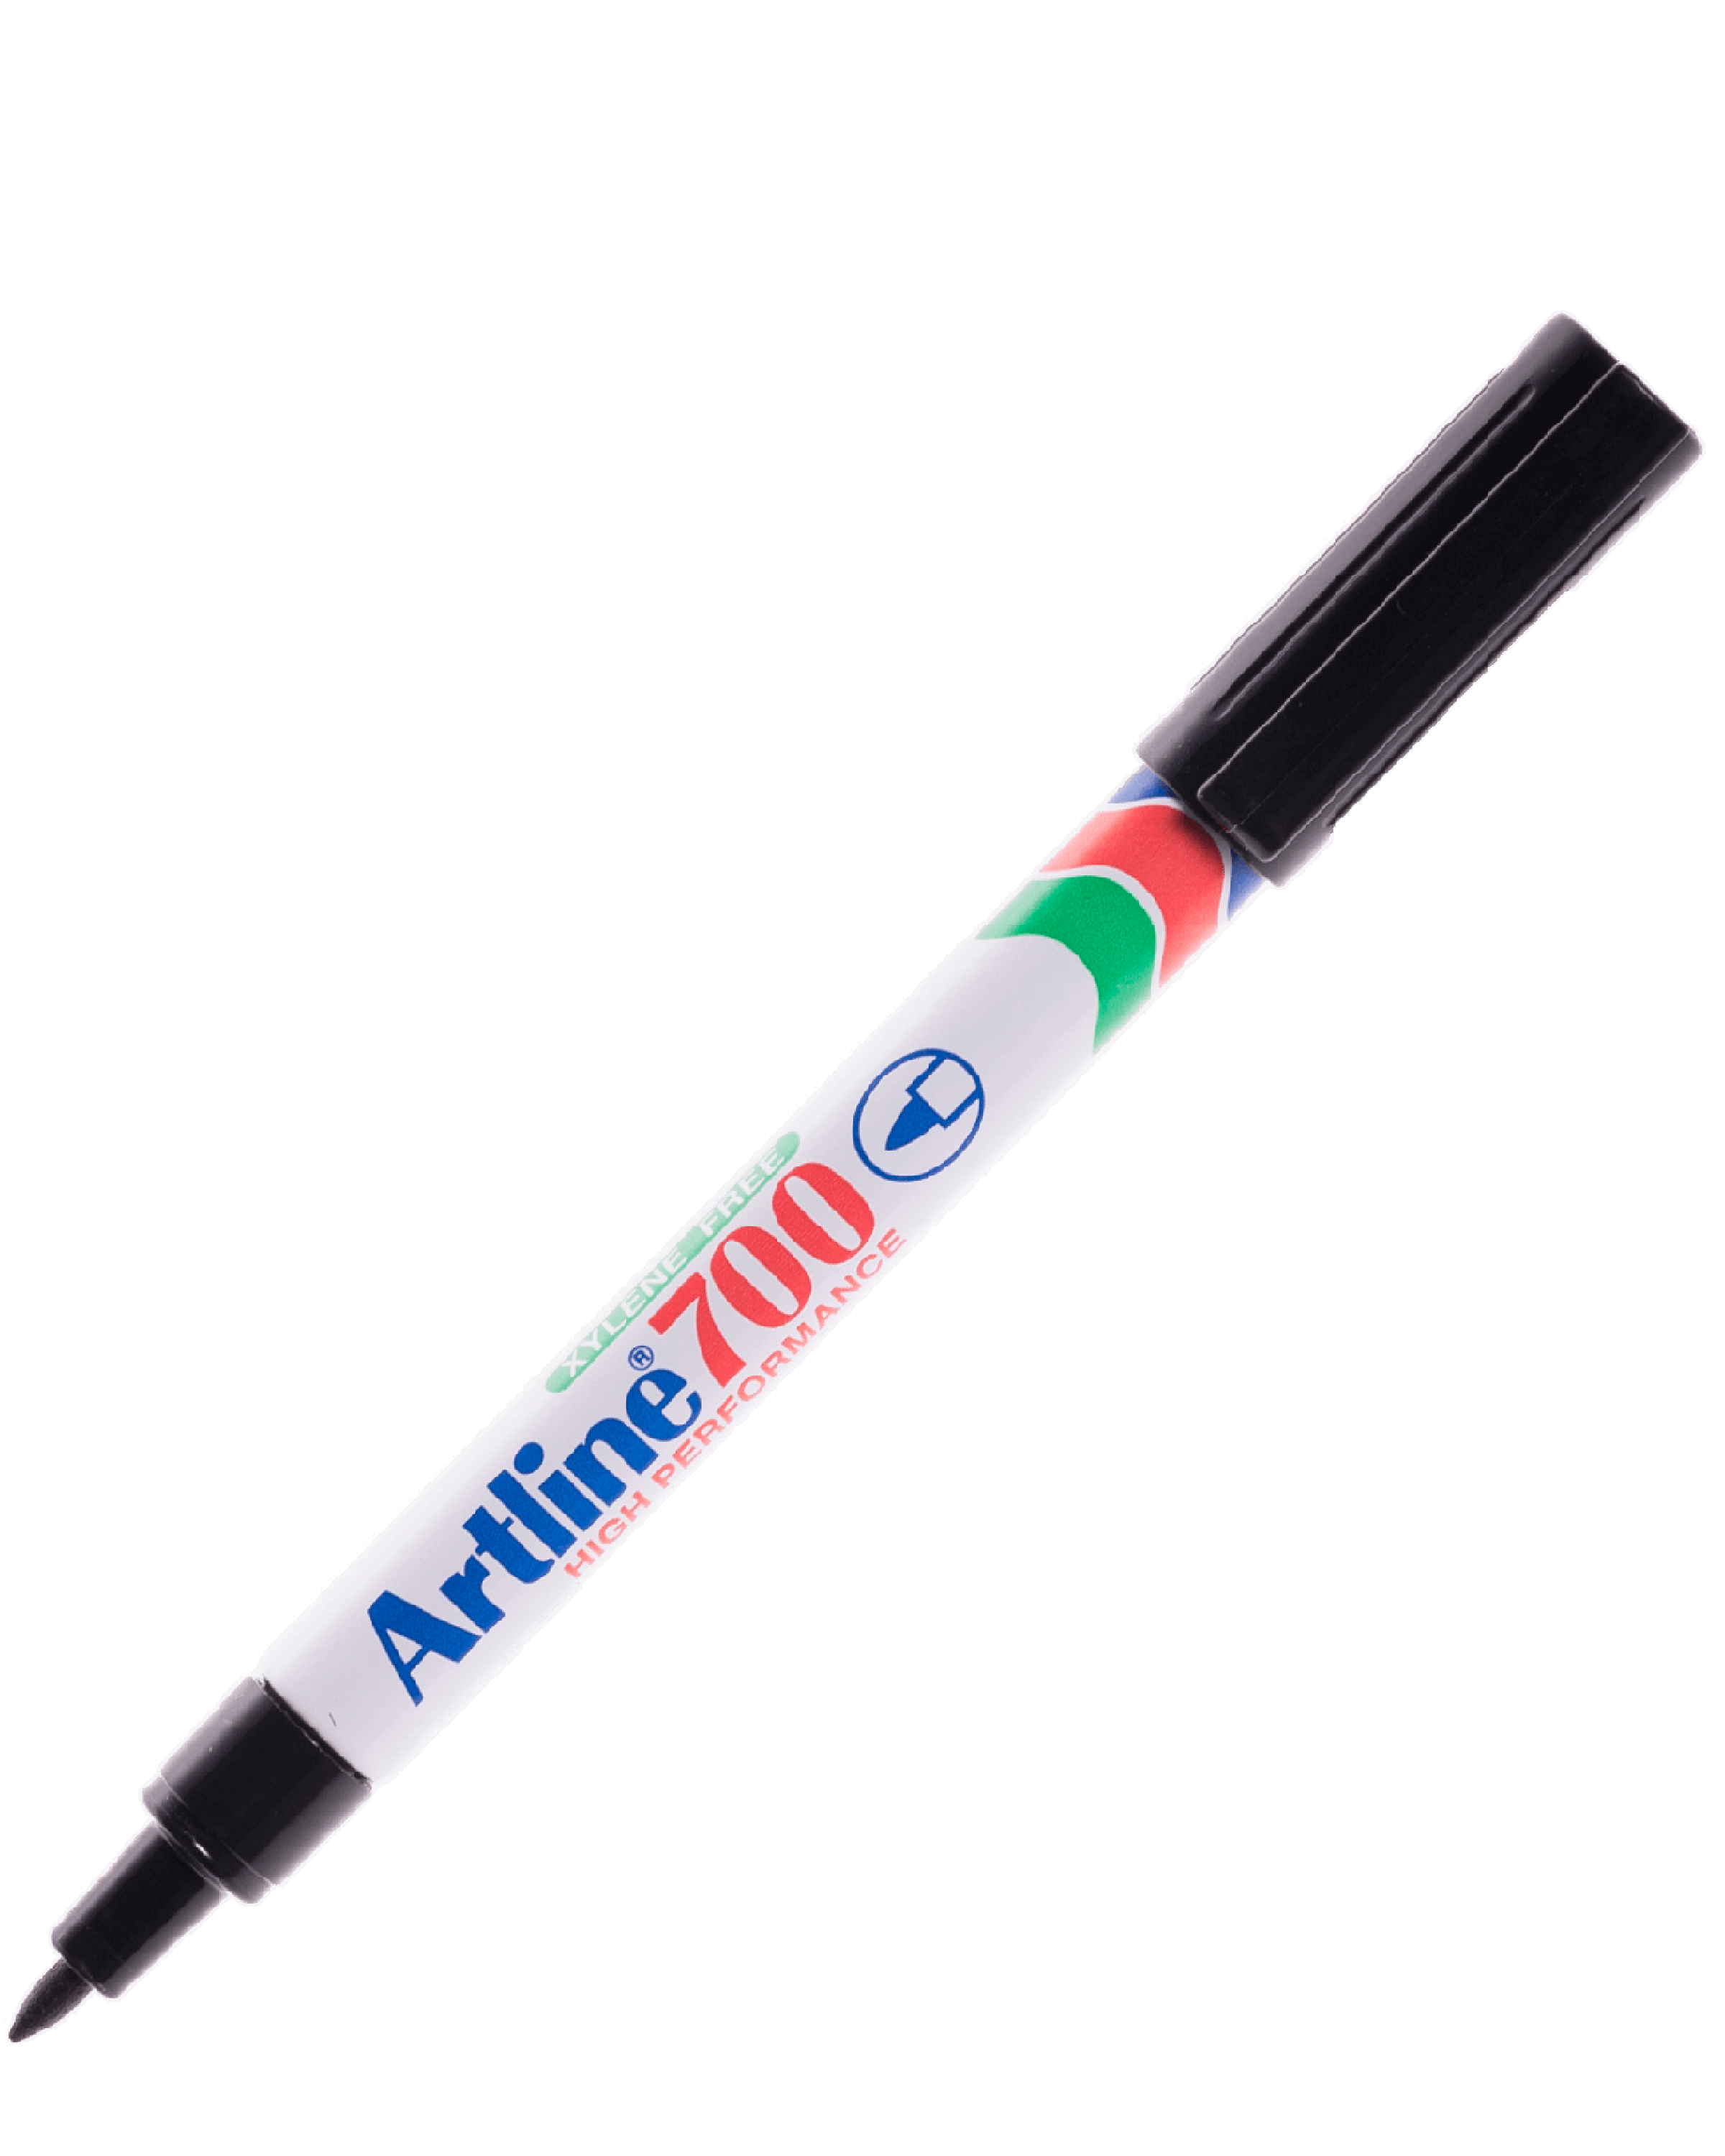 ปากกาเคมีหัวแหลม Artline EK-700 สีดำ 0.7 มม.